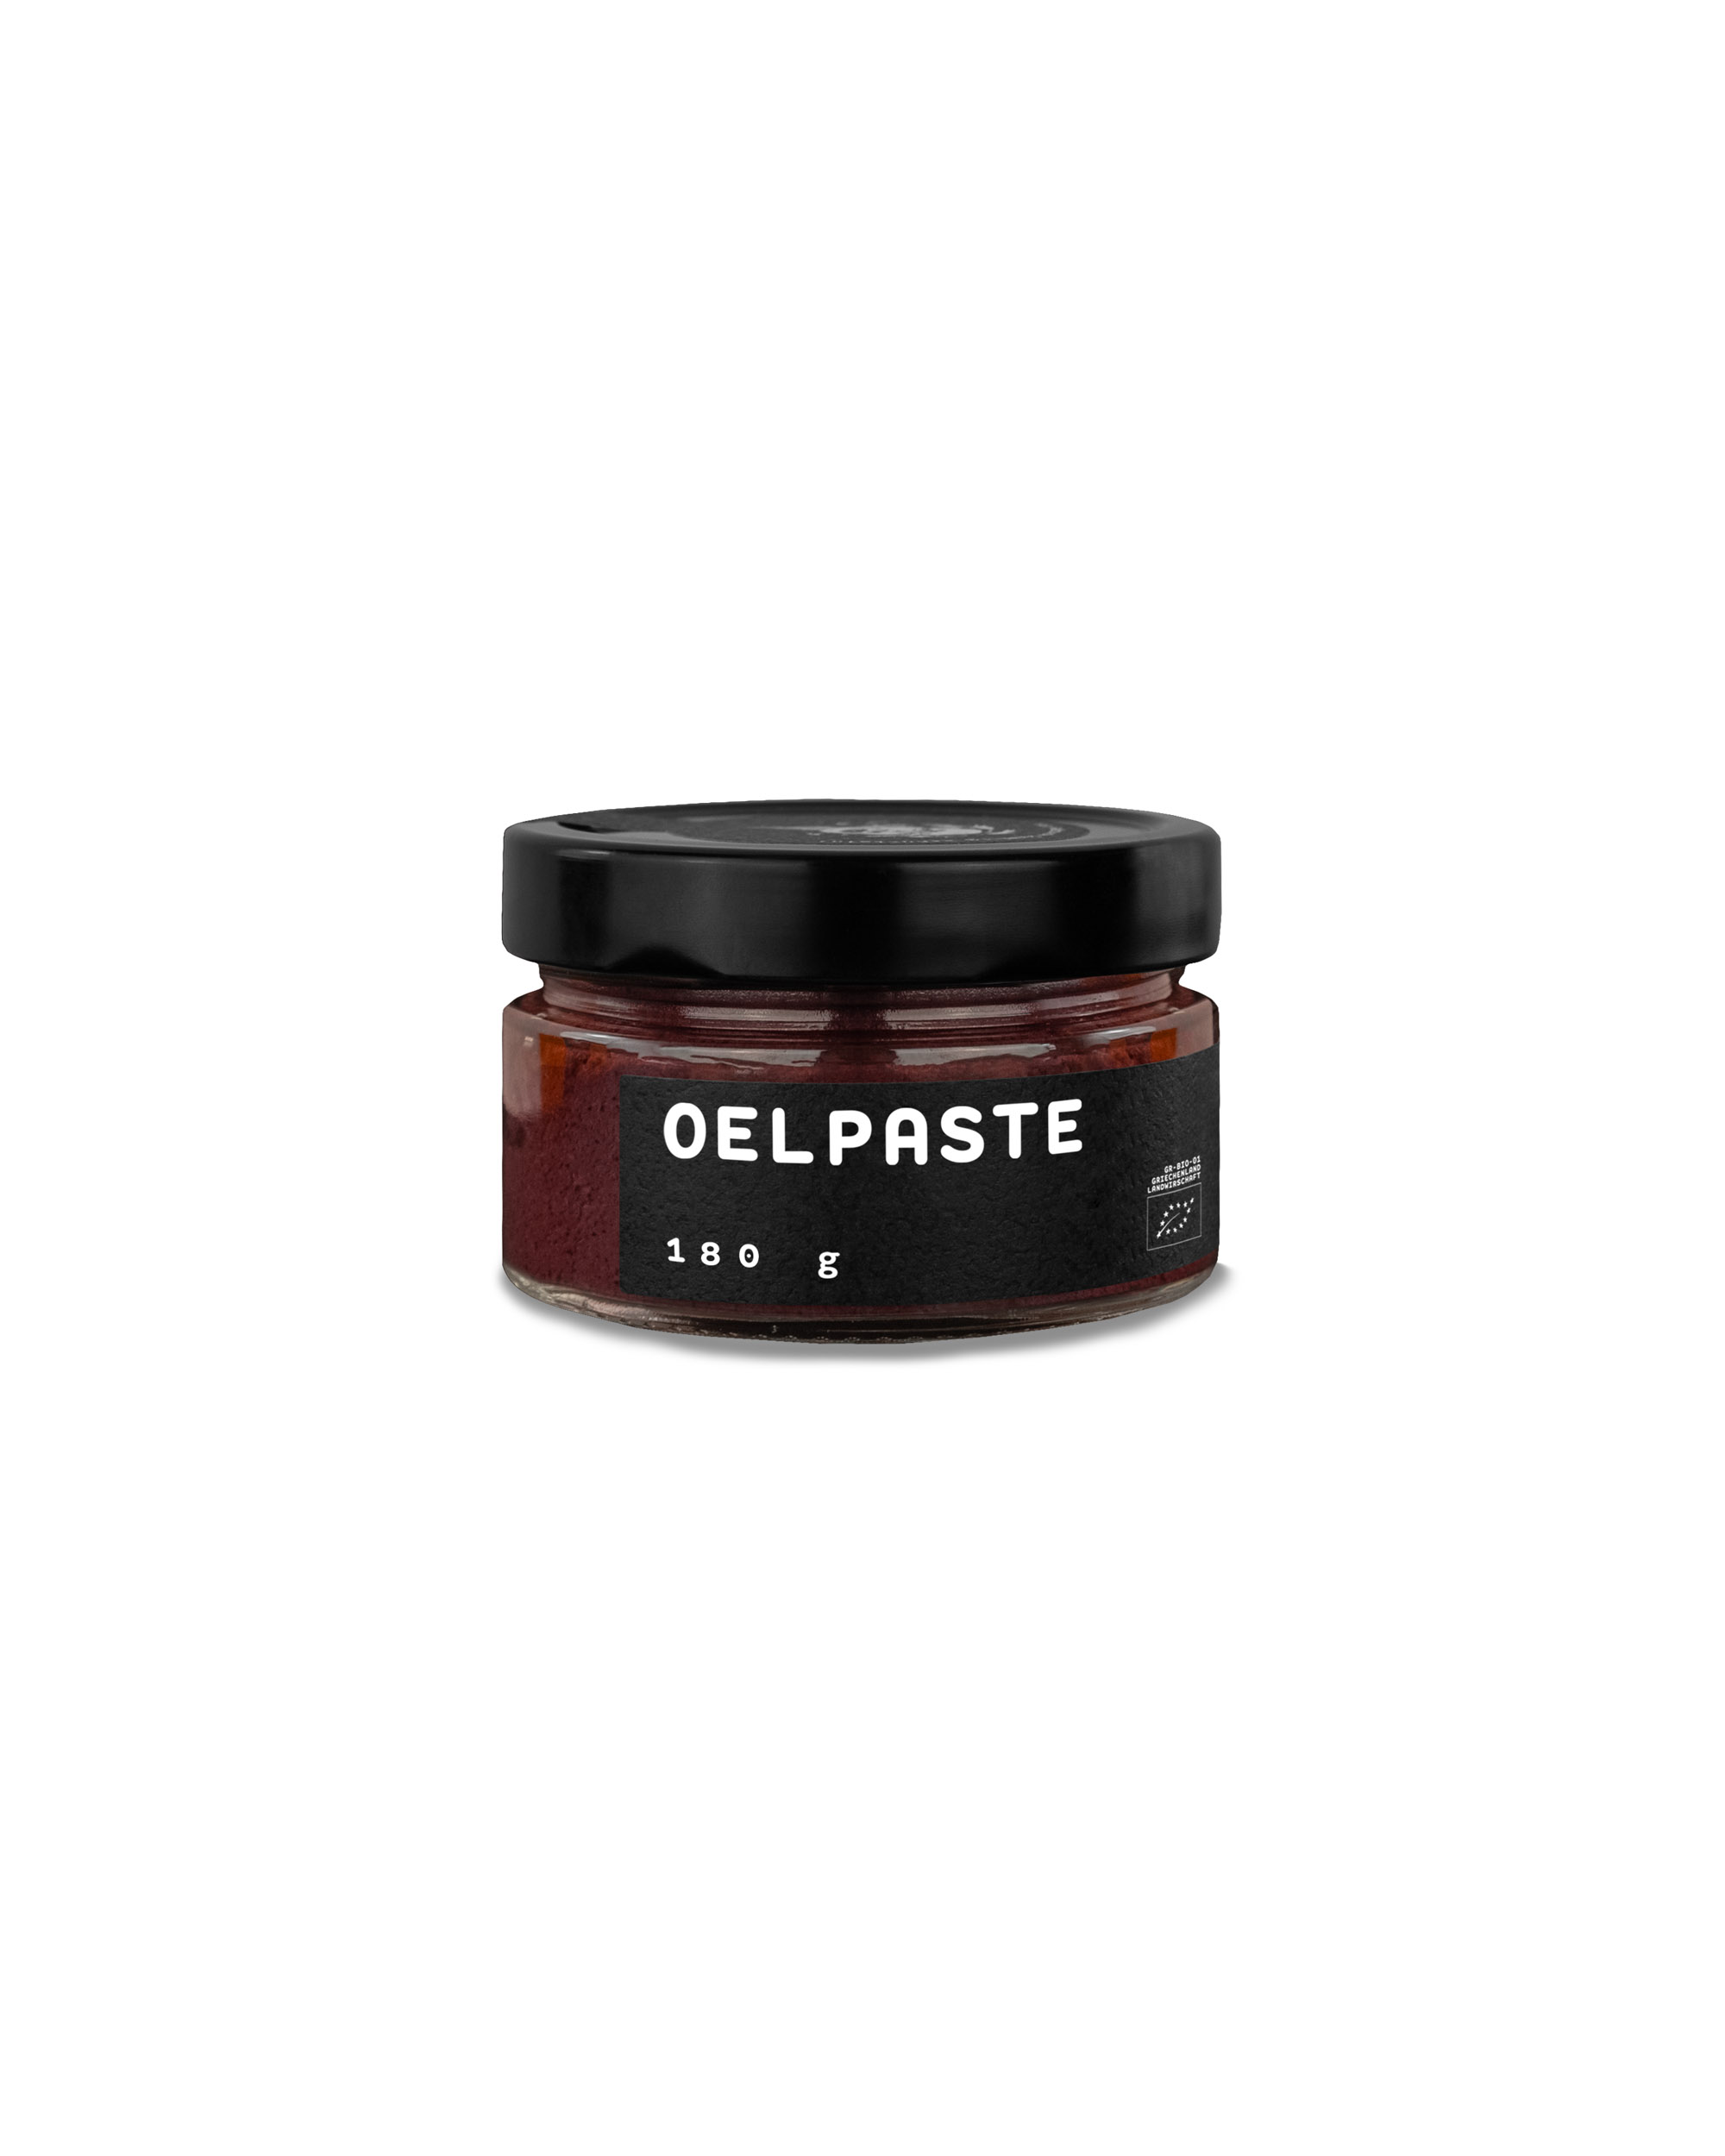 OELPASTE - Kalamata olive spread